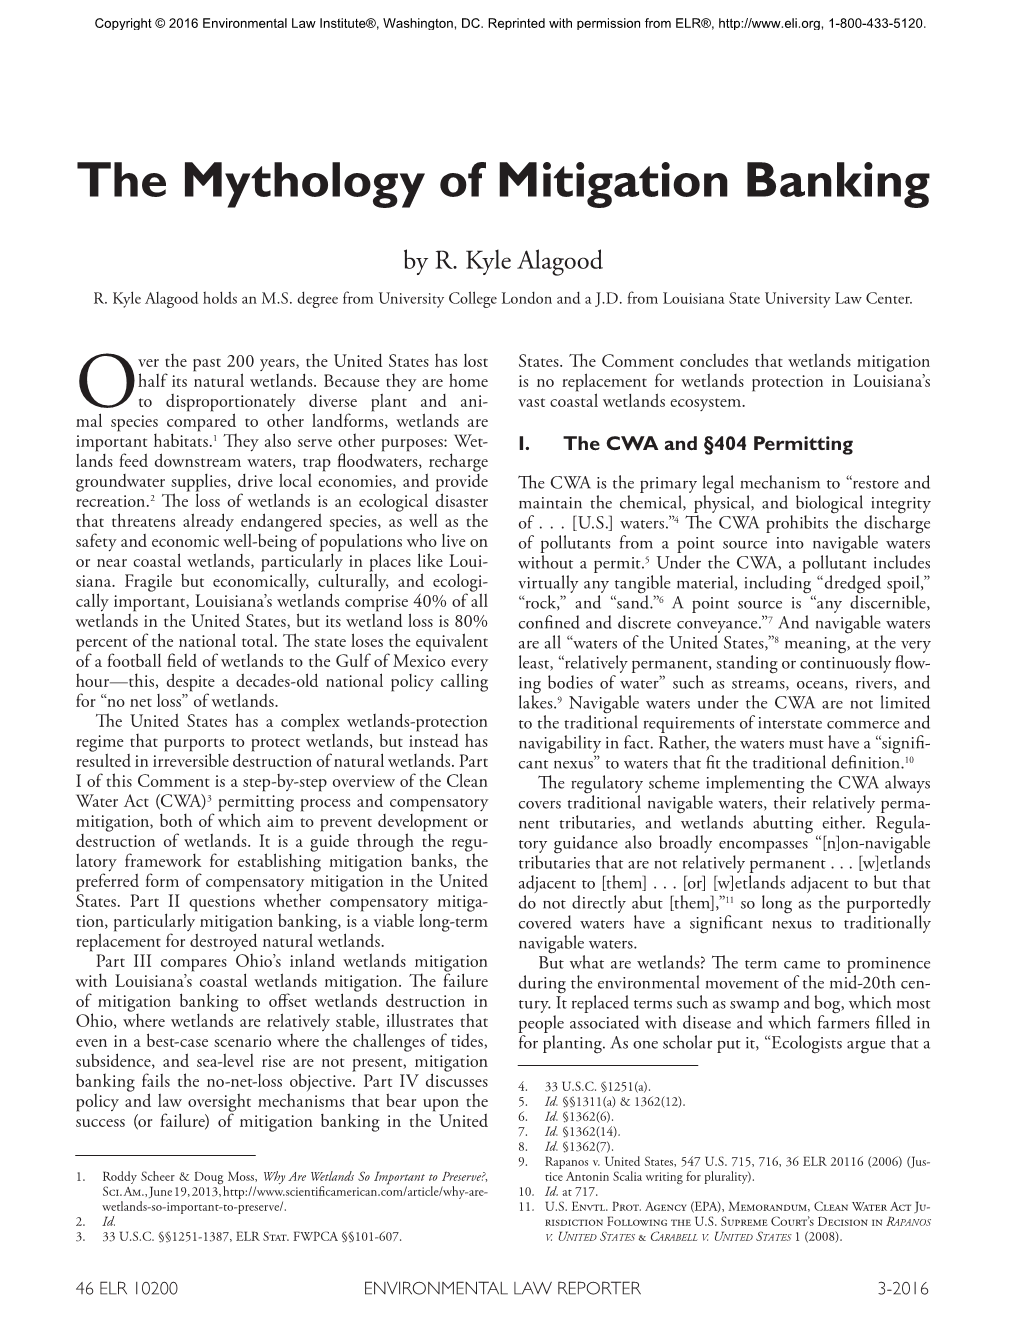 The Mythology of Mitigation Banking